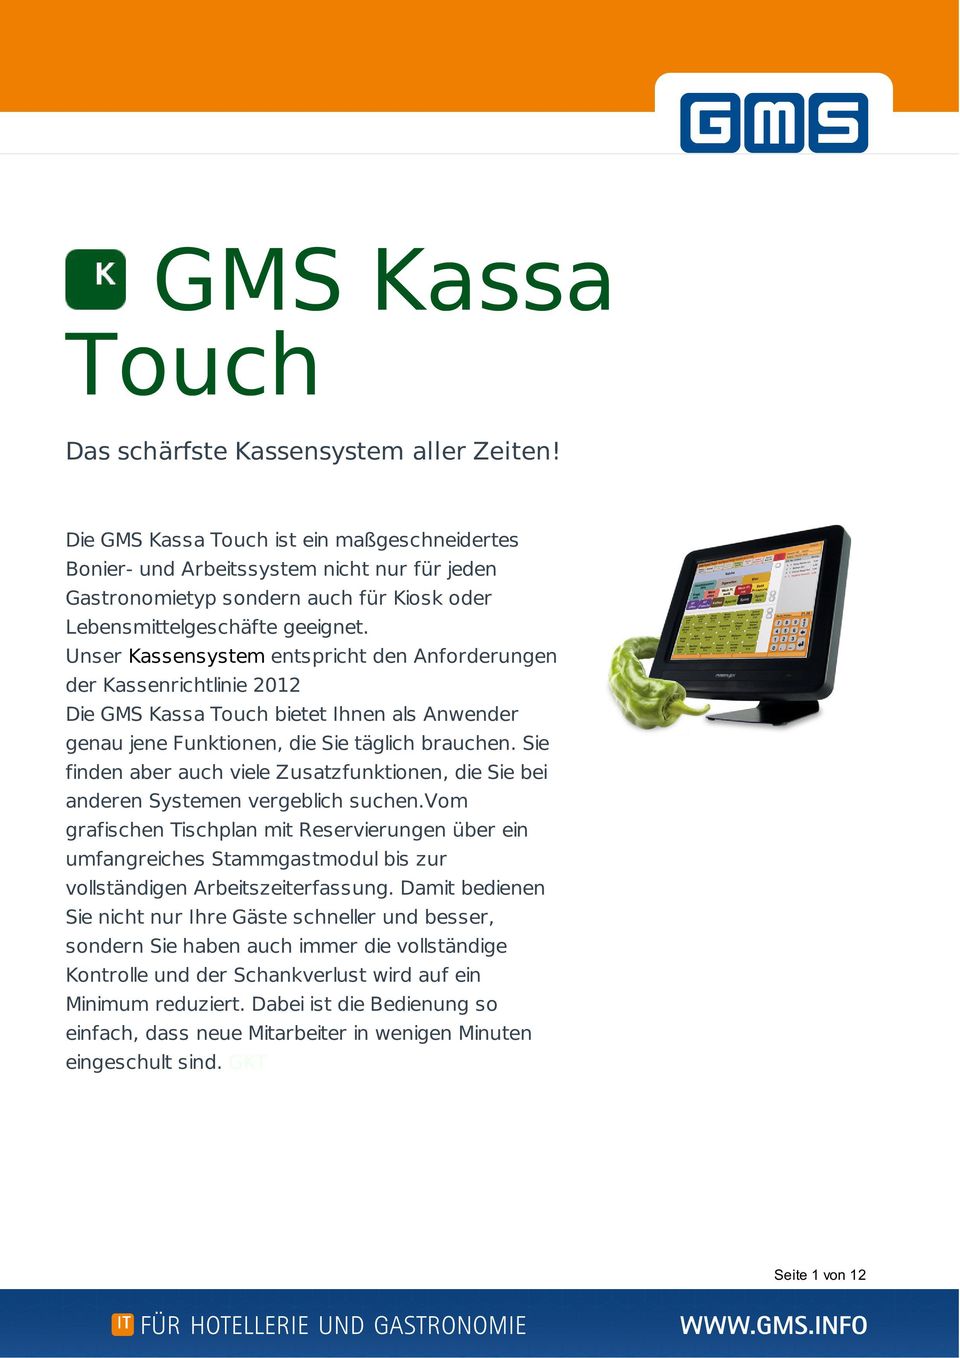 Unser Kassensystem entspricht den Anforderungen der Kassenrichtlinie 2012 Die GMS Kassa Touch bietet Ihnen als Anwender genau jene Funktionen, die Sie täglich brauchen.